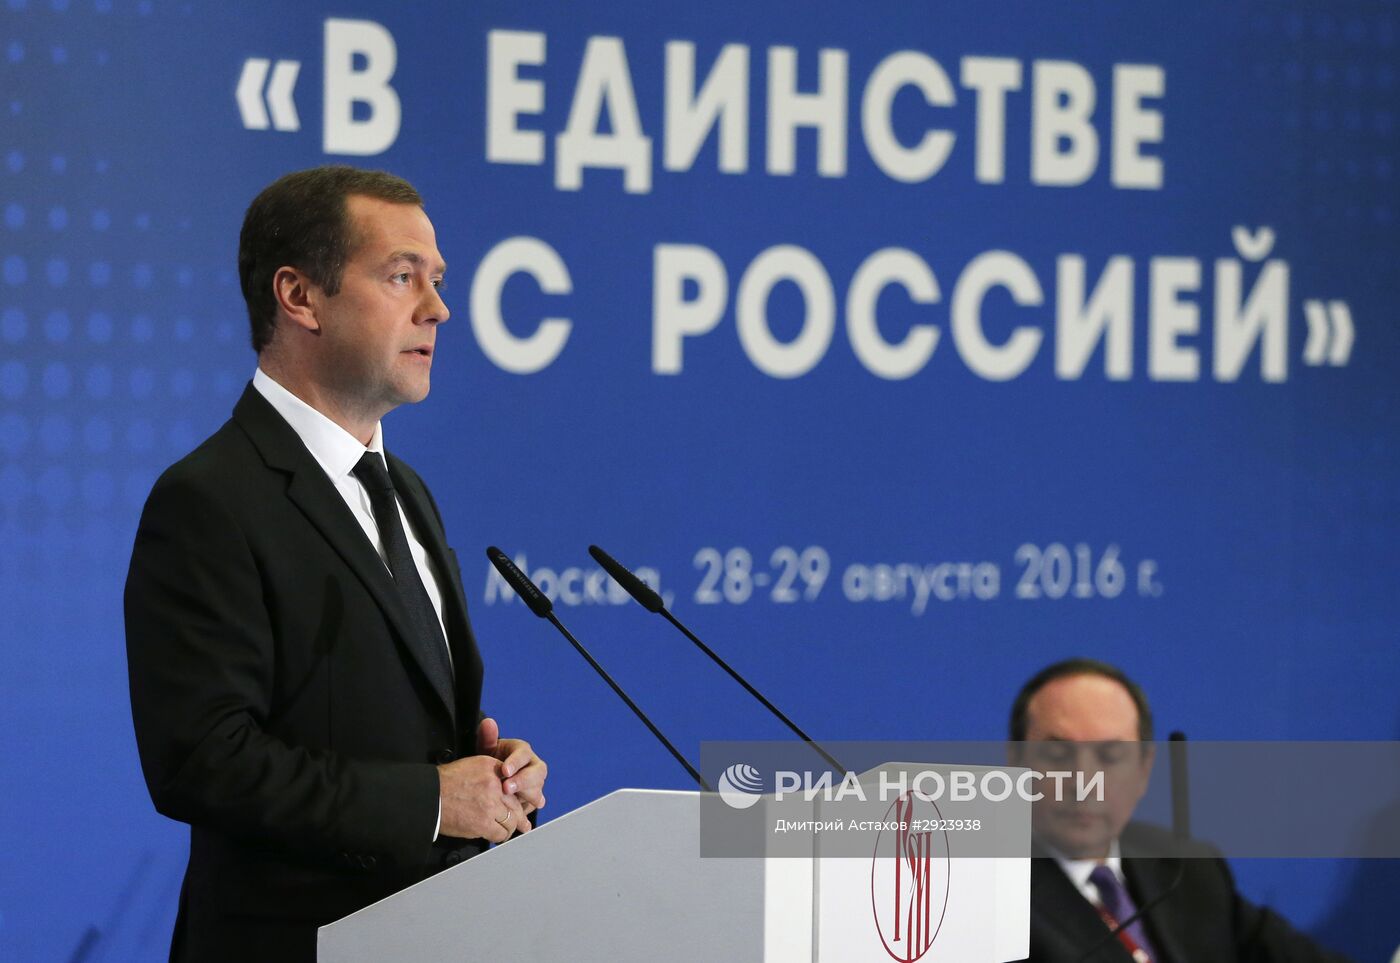 Премьер-министр РФ Д. Медведе на Всемирном форуме "В единстве с Россией"